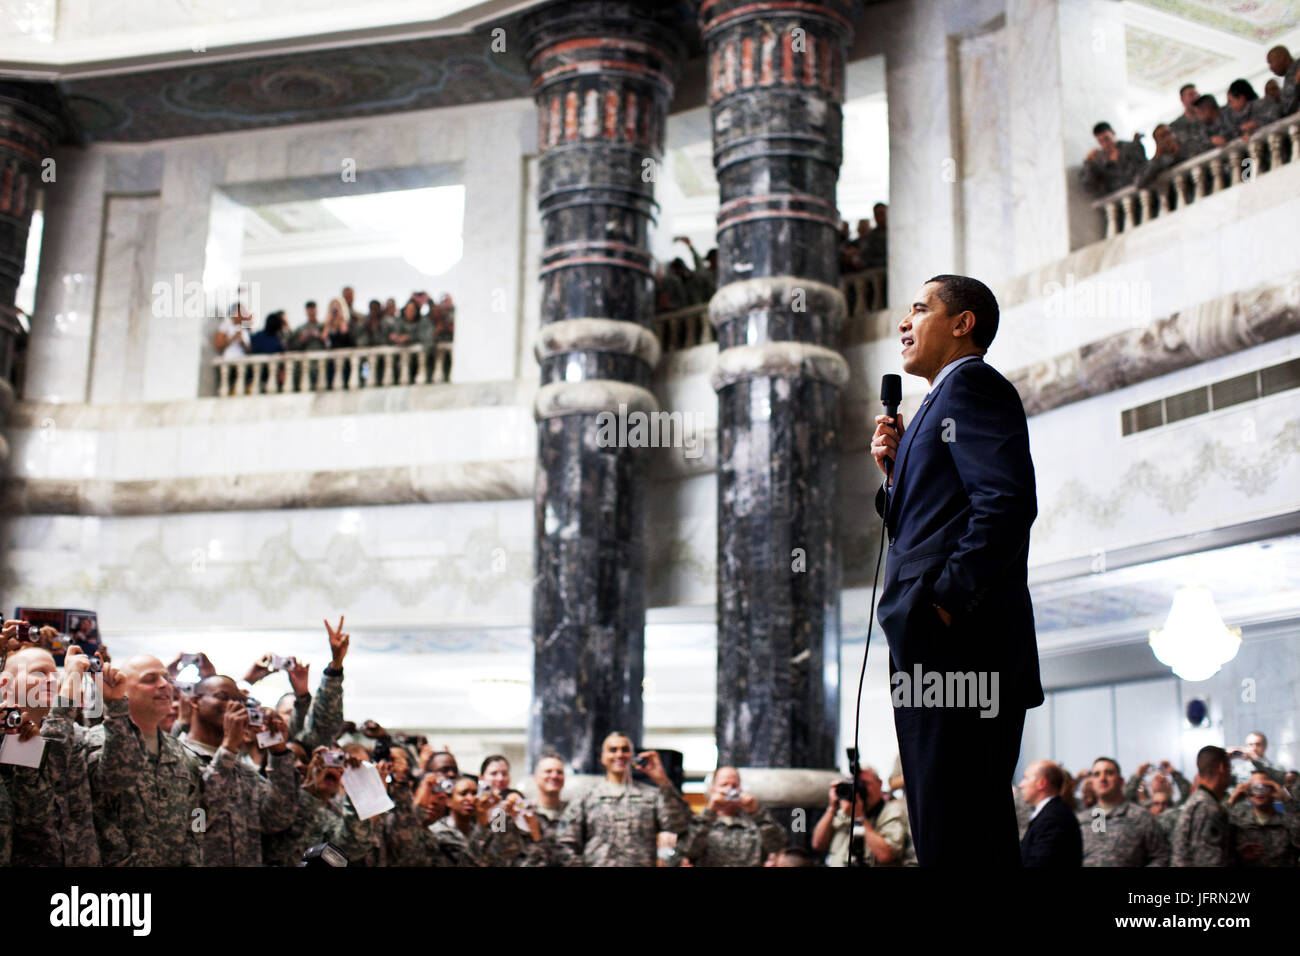 Le président Barack Obama aborde les troupes américaines au cours de sa visite au camp Victory, à Bagdad, l'Iraq 4/7/09. Photo Officiel de la Maison Blanche par Pete Souza Banque D'Images